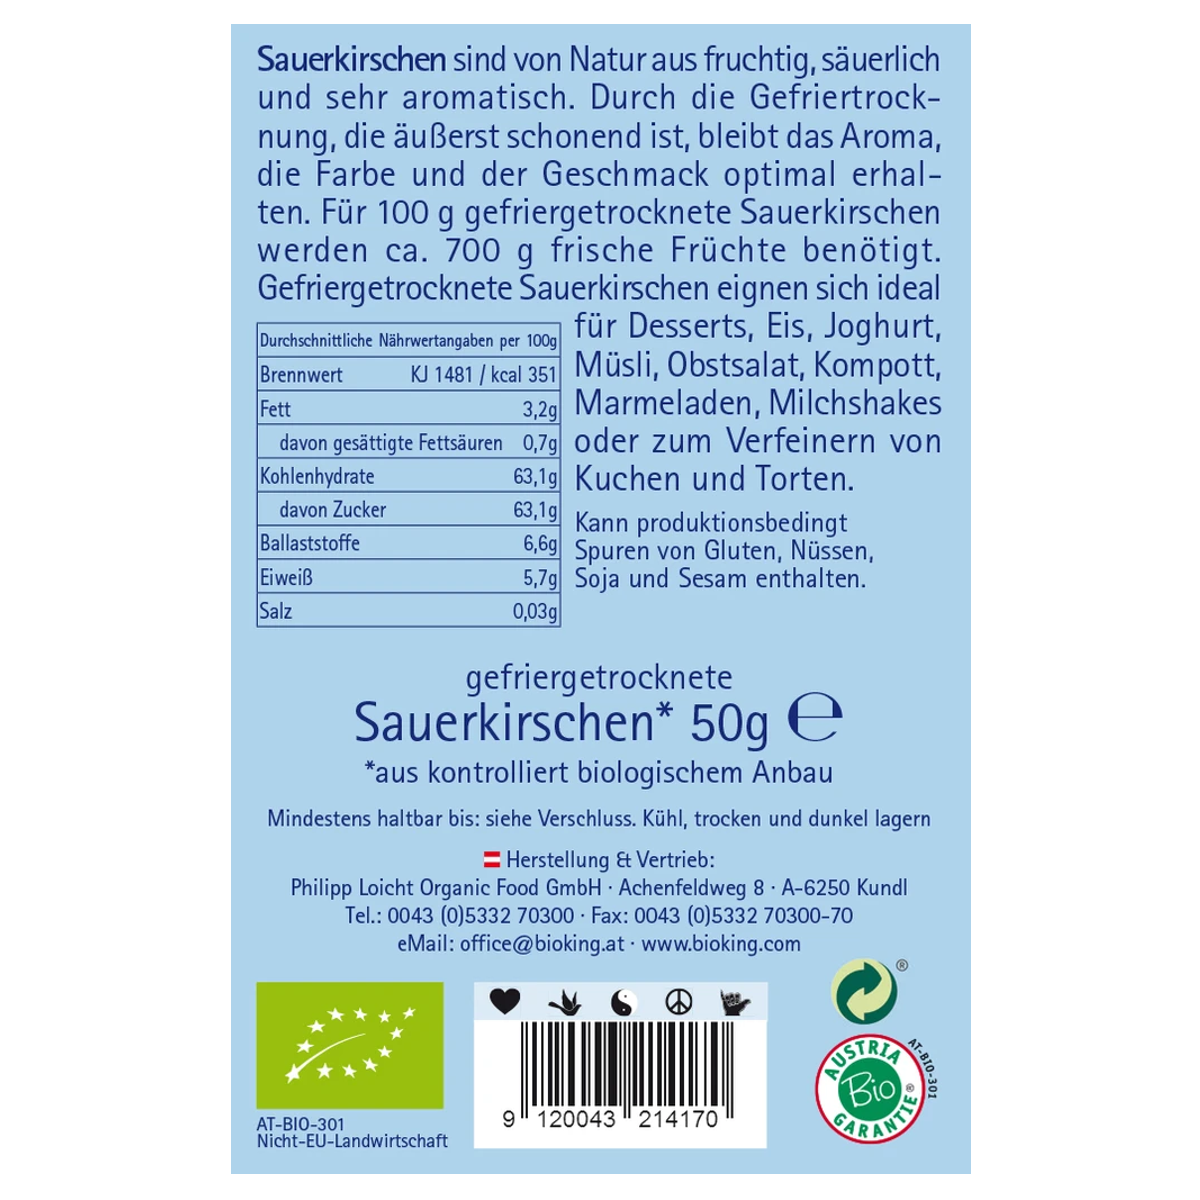 Bioking_Sauerkirschen_gefriergetrocknet_online_kaufen